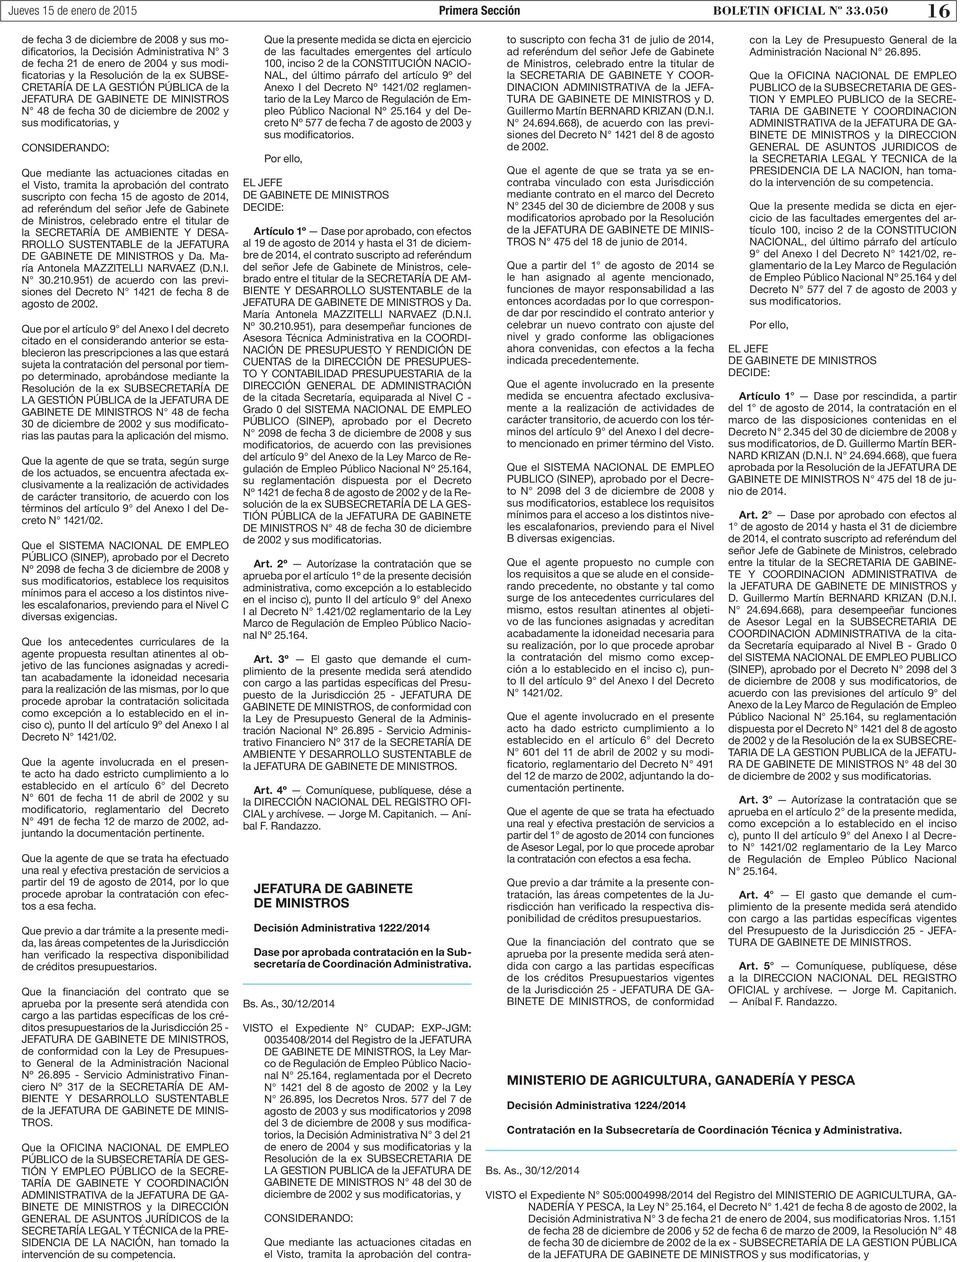 PÚBLICA de la JEFATURA DE GABINETE DE MINISTROS N 48 de fecha 30 de diciembre de 2002 y sus modificatorias, y Que mediante las actuaciones citadas en el Visto, tramita la aprobación del contrato